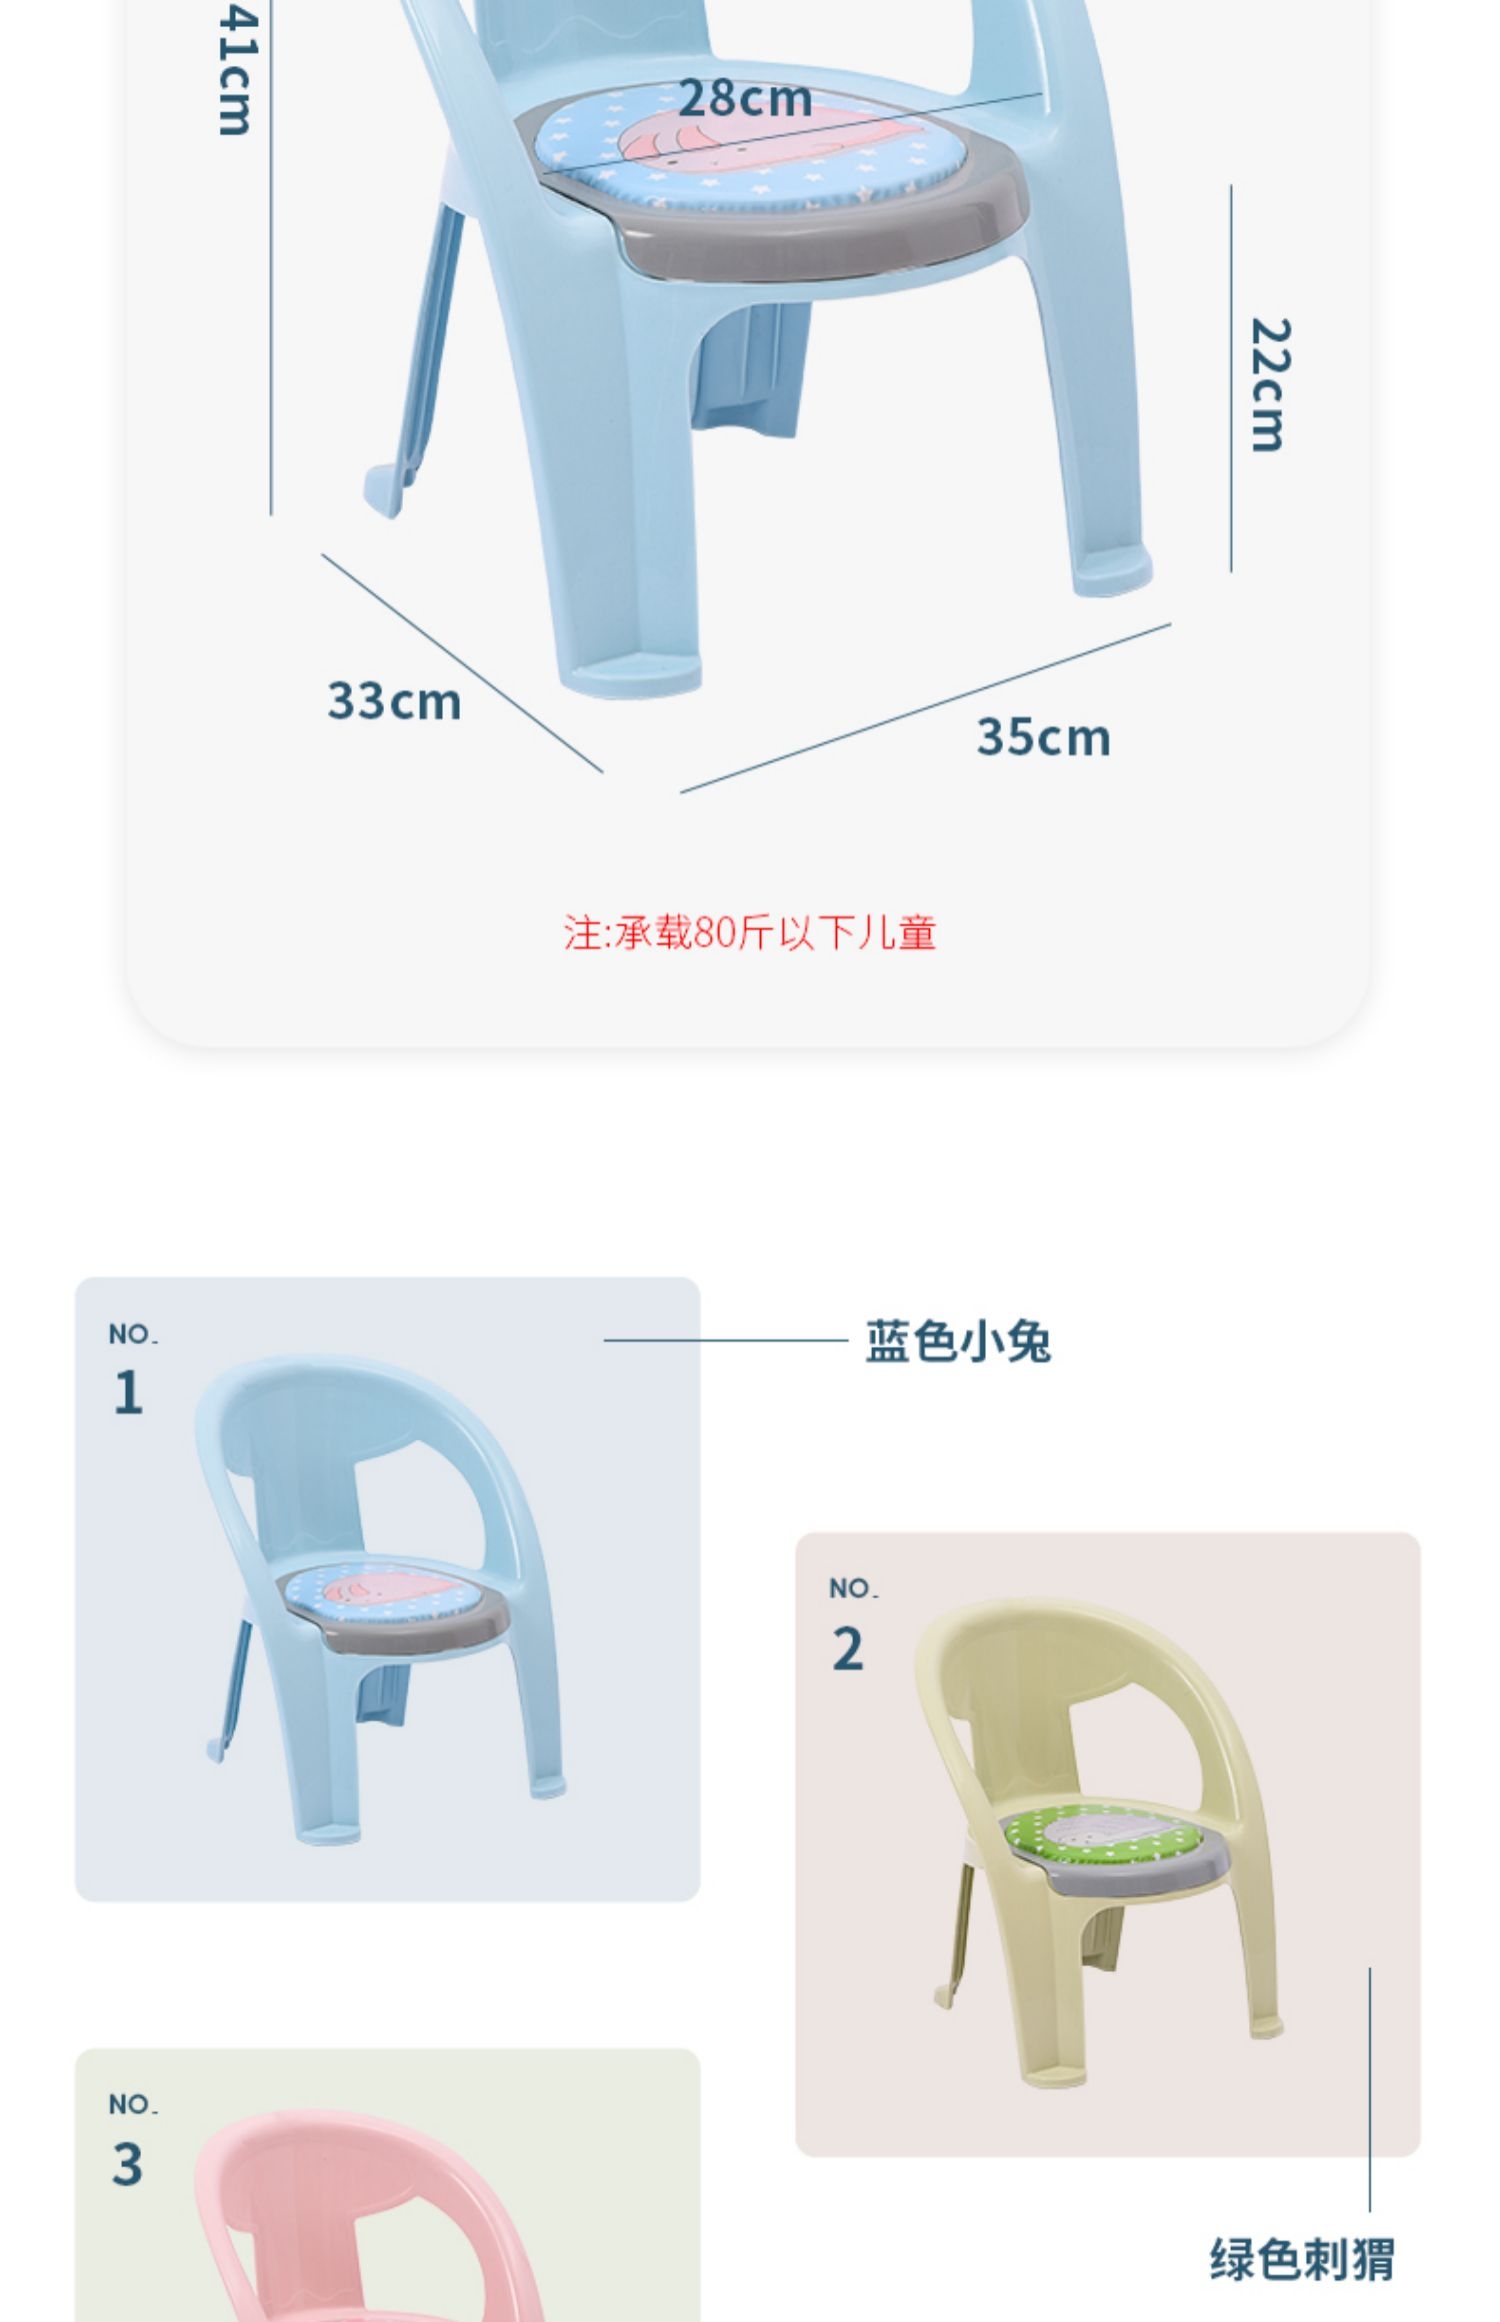 新款创意儿童靠背叫叫椅子加厚卡通塑料宝宝靠背椅防滑幼儿园椅子详情图4